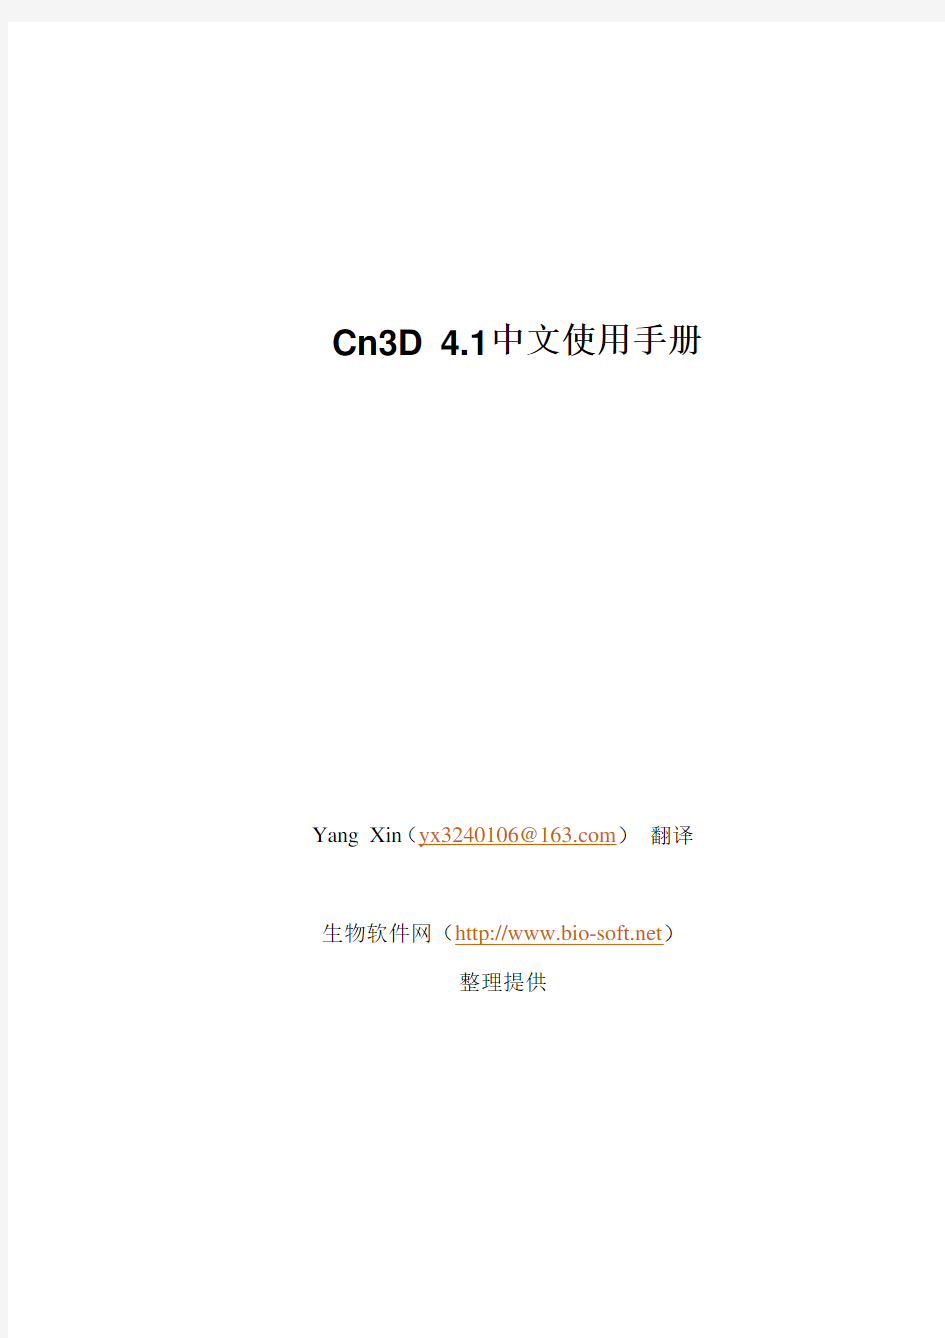 Cn3D4.1使用说明中文版